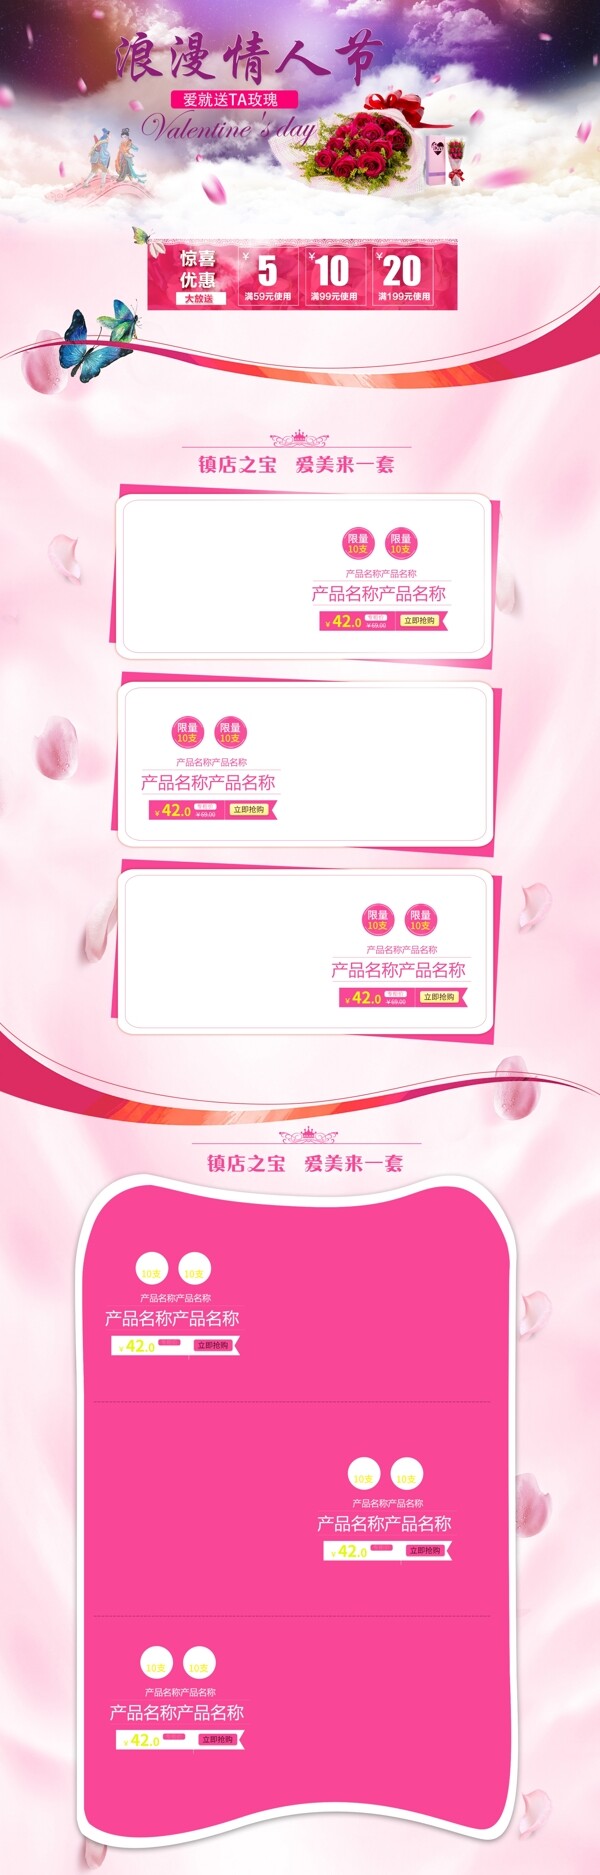 淘宝天猫七夕情人节通用首页模板PSD